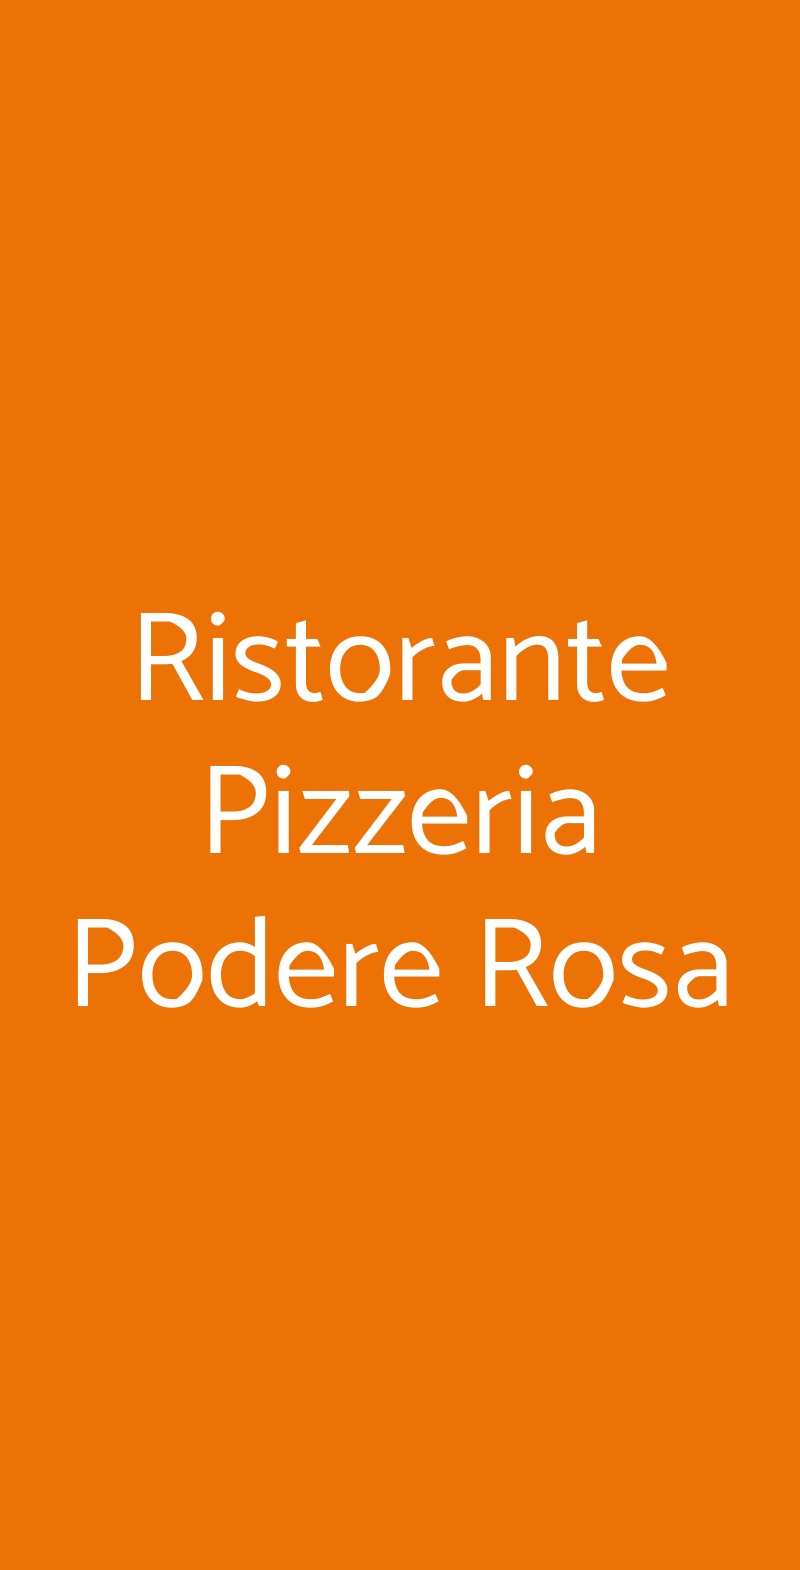 Ristorante Pizzeria Podere Rosa Roma menù 1 pagina